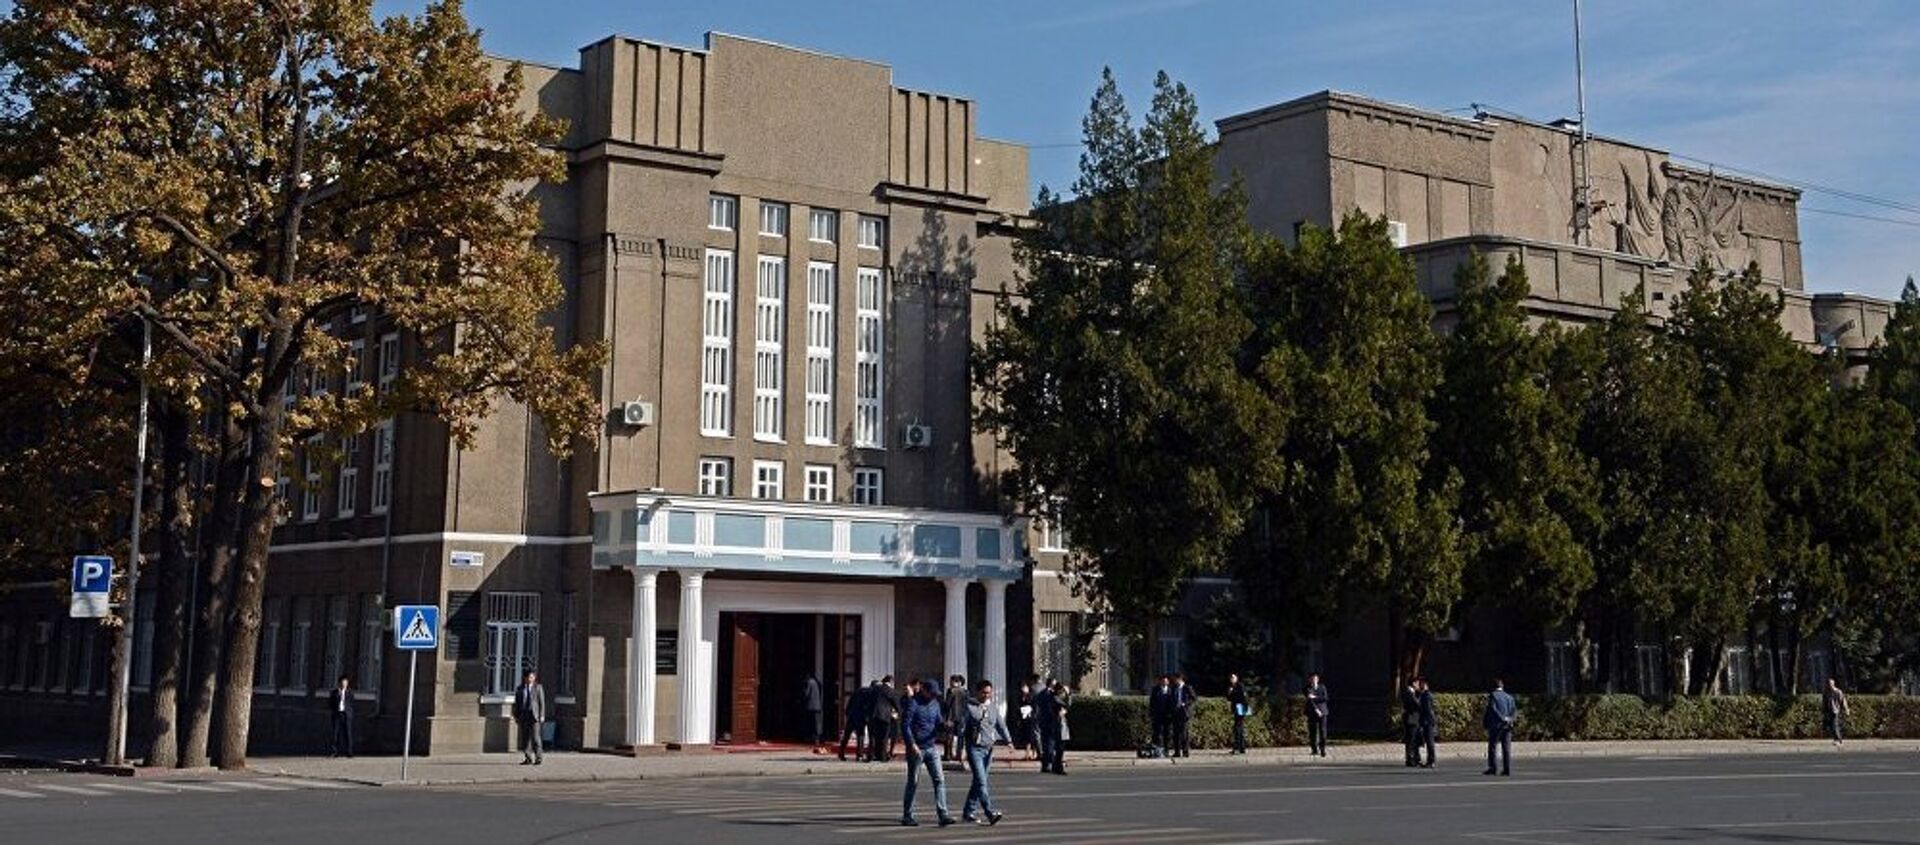 Новое здание верховного суда Республики Кыргызстан, архивное фото - Sputnik Таджикистан, 1920, 07.07.2017